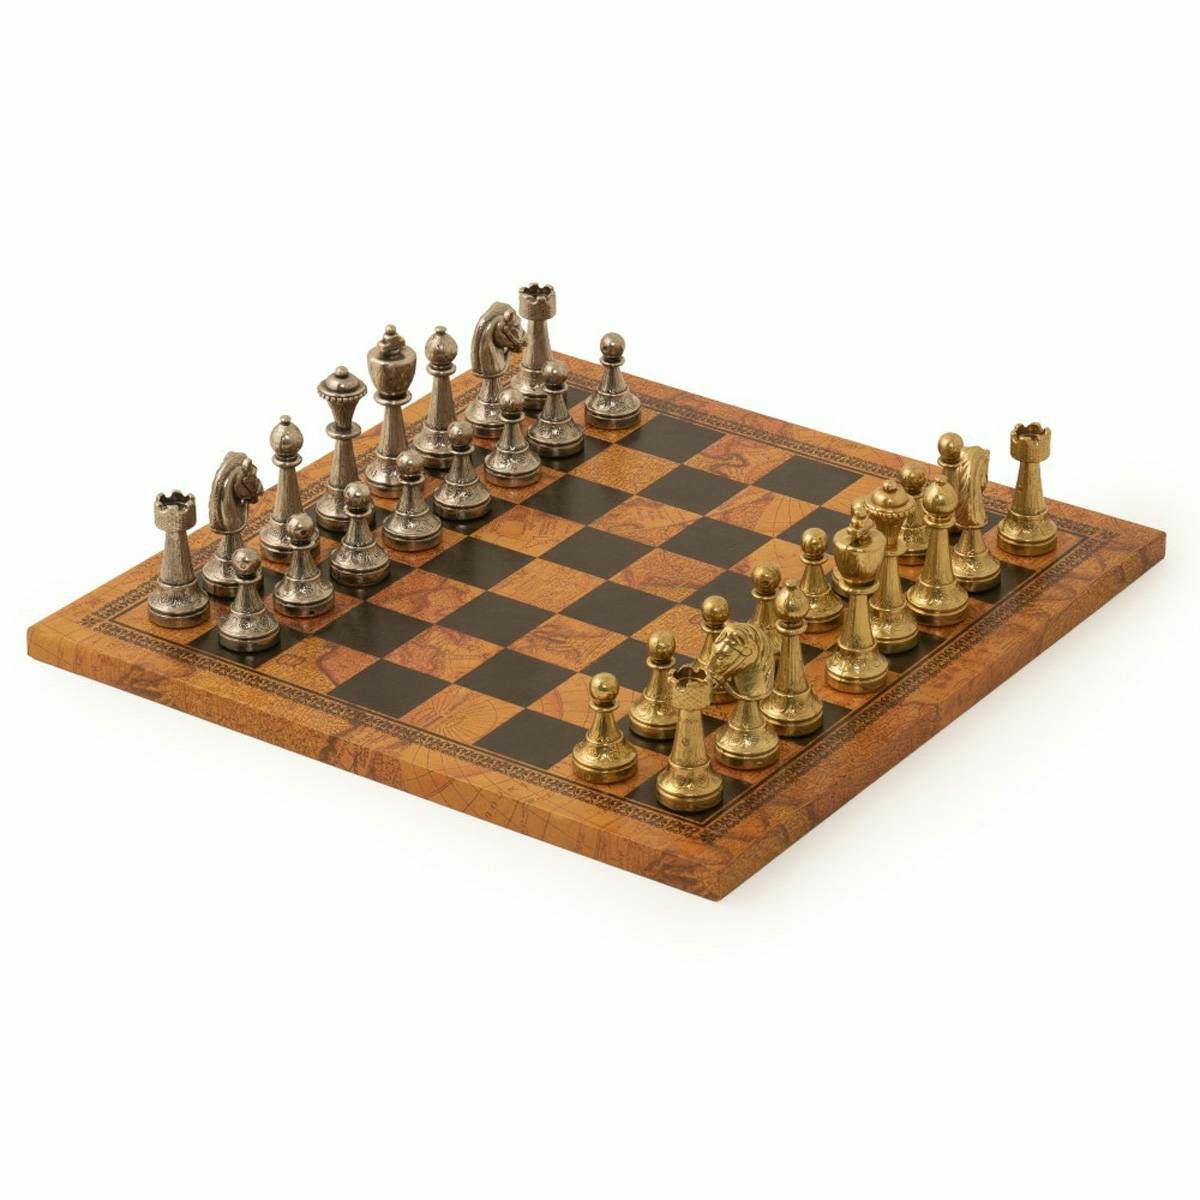 Šah Set Arabesque Staunton 33 x 33 cm 